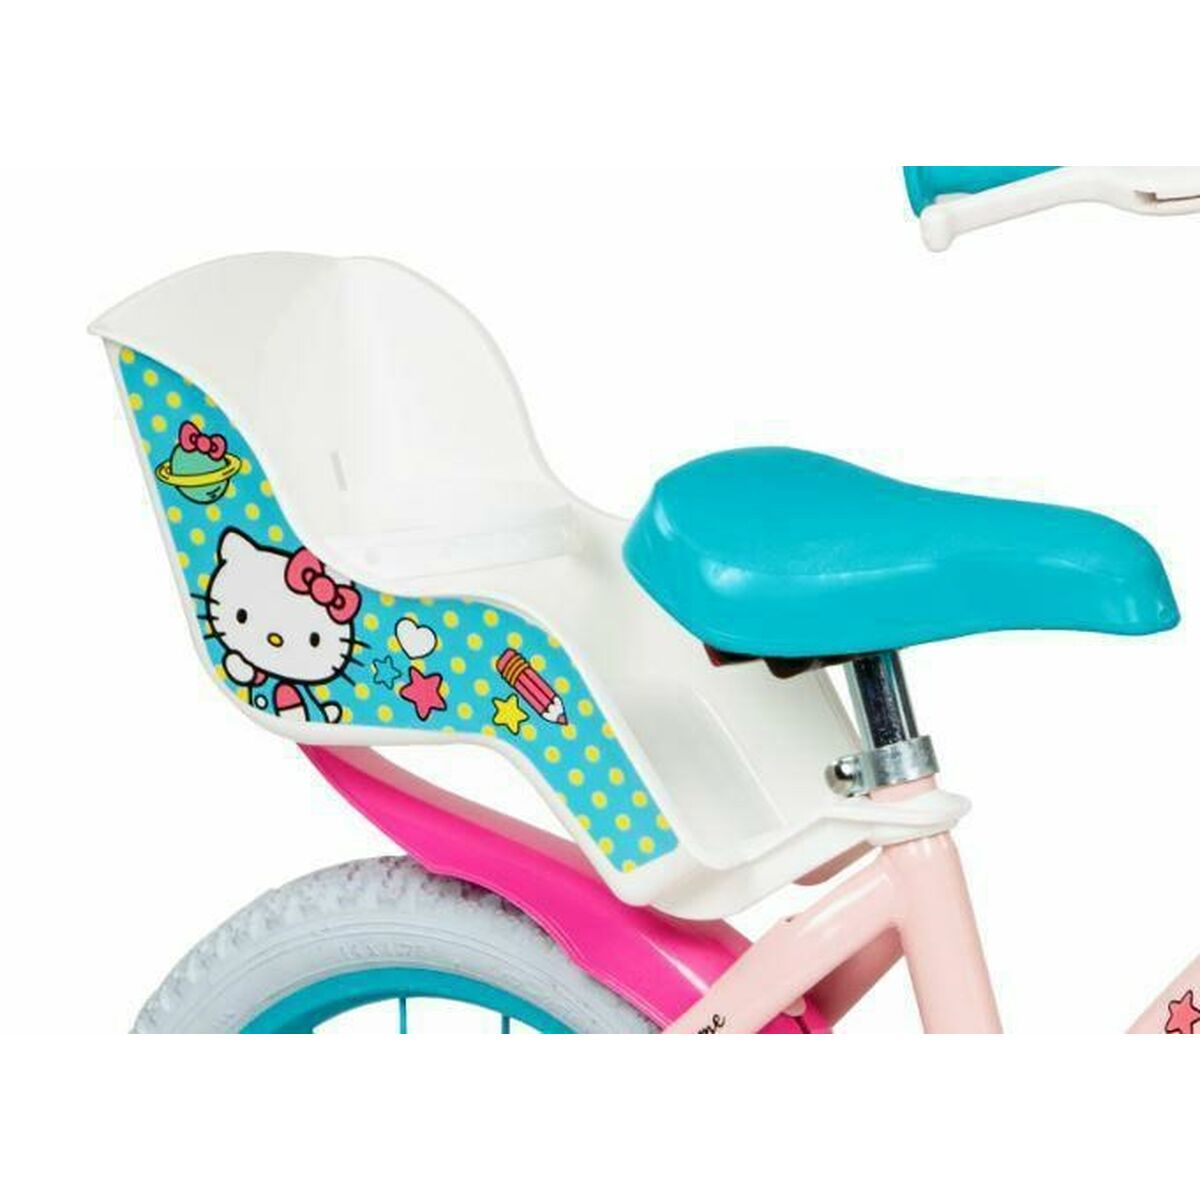 Bērnu velosipēds Toimsa Hello Kitty